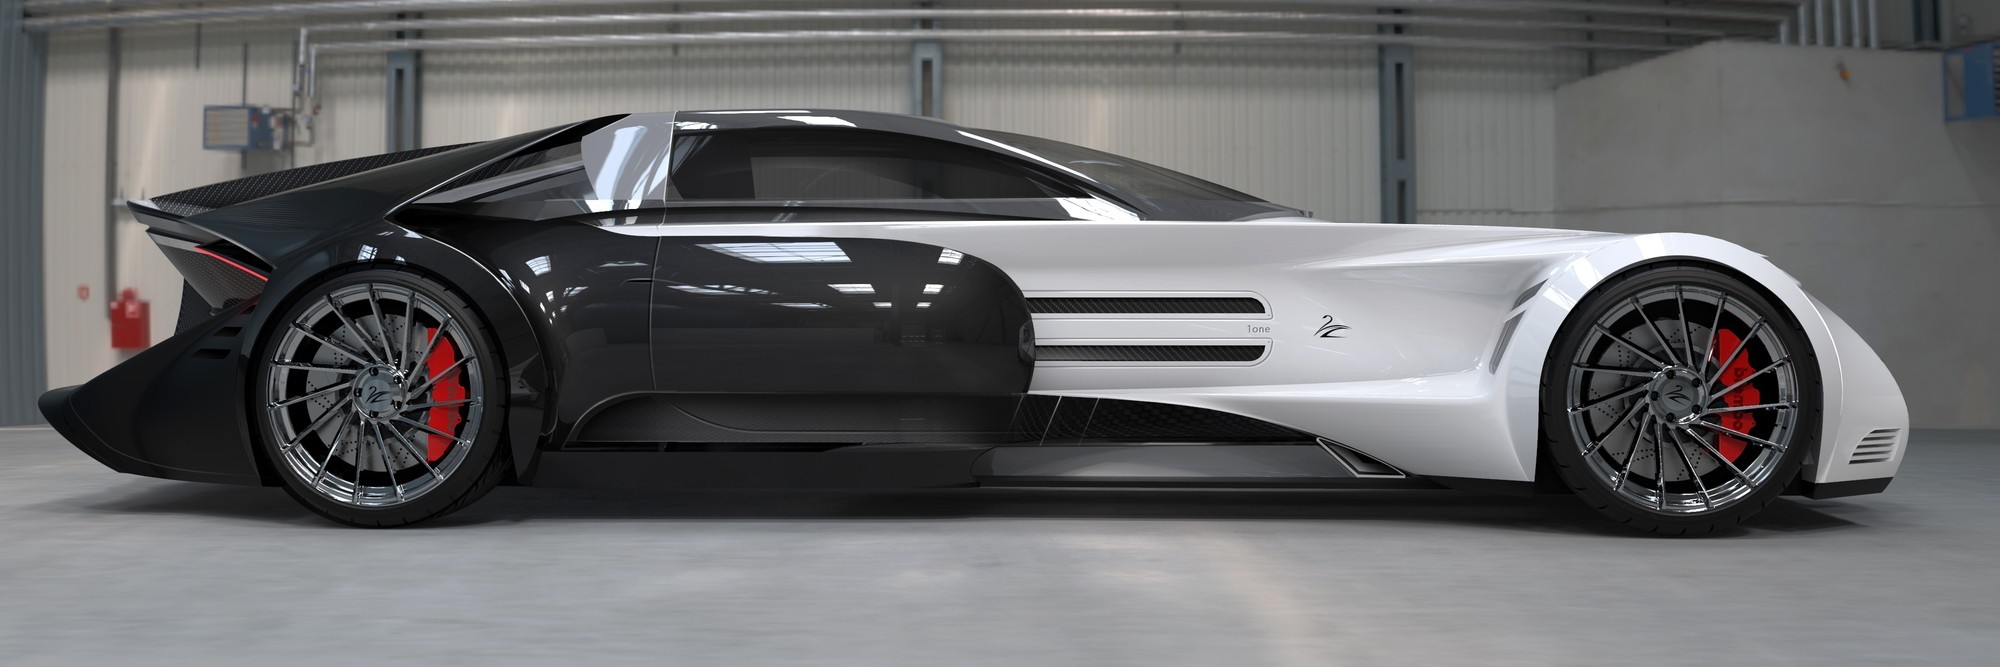 Lazzarini One: 1800-сильное купе с эпатажным дизайном за 2,55 млн евро Lazzarini, Лазарини, очень, Пьерпаоло, машины, машину, возможно, Луиджи, мощностью, Колани, который, студии, двери, человек, длиной, изготовлен, углепластика, вмещает, вверх, четырёх